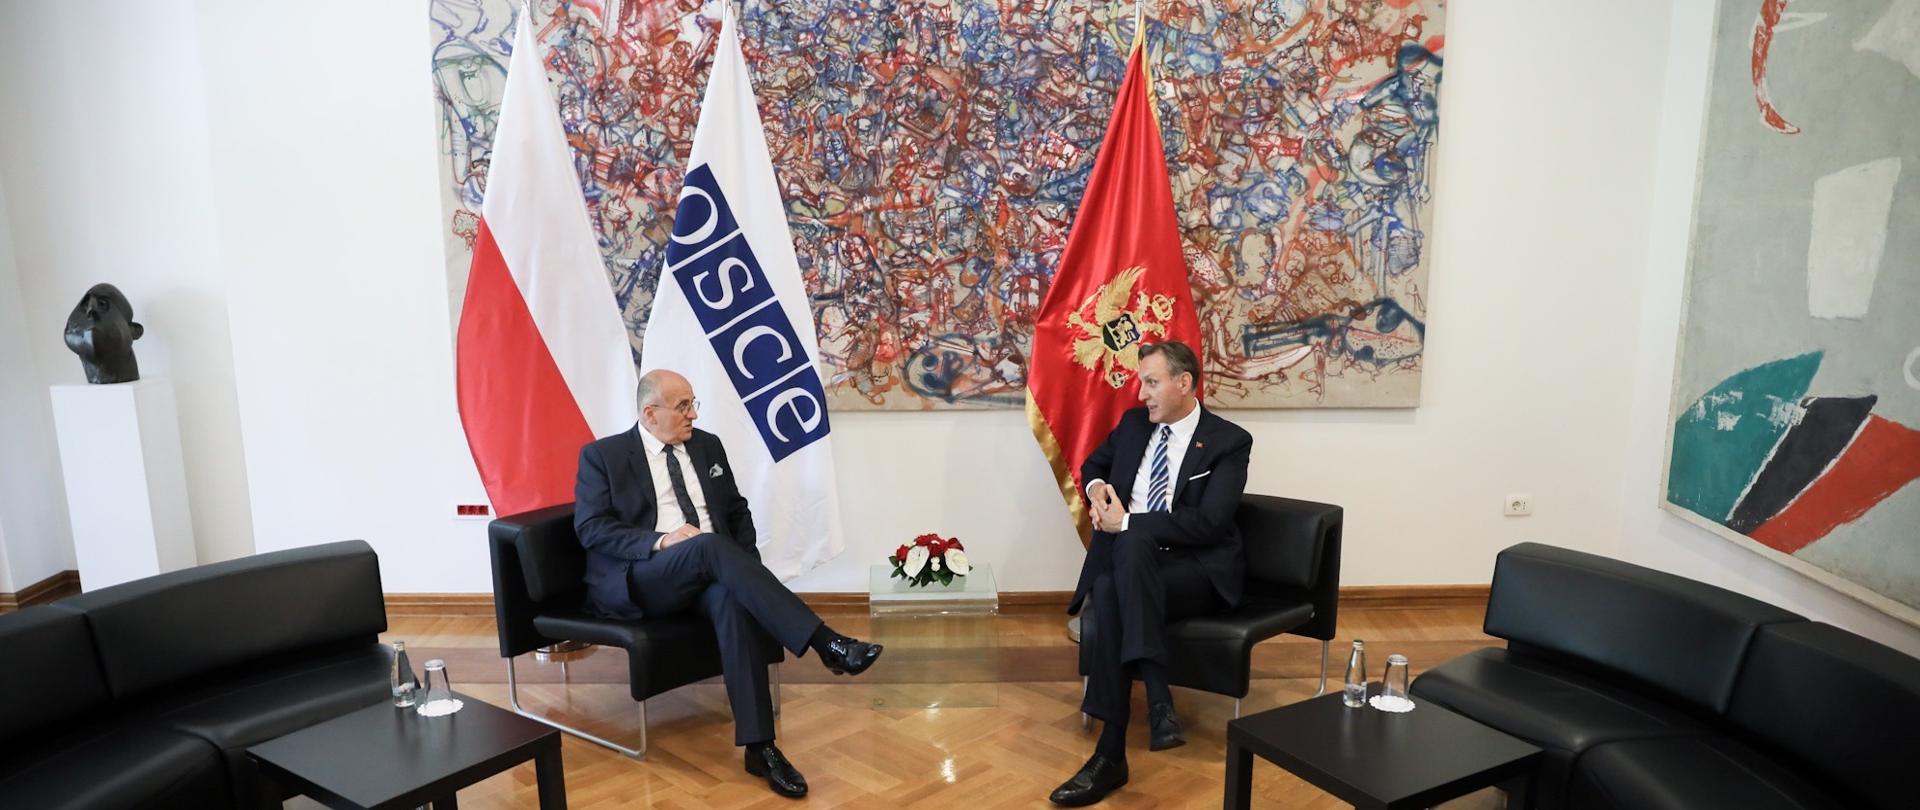 Spotkanie Ministra Raua z ministrem spraw zagranicznych Ranko Krivokapiciem w Czarnogórze